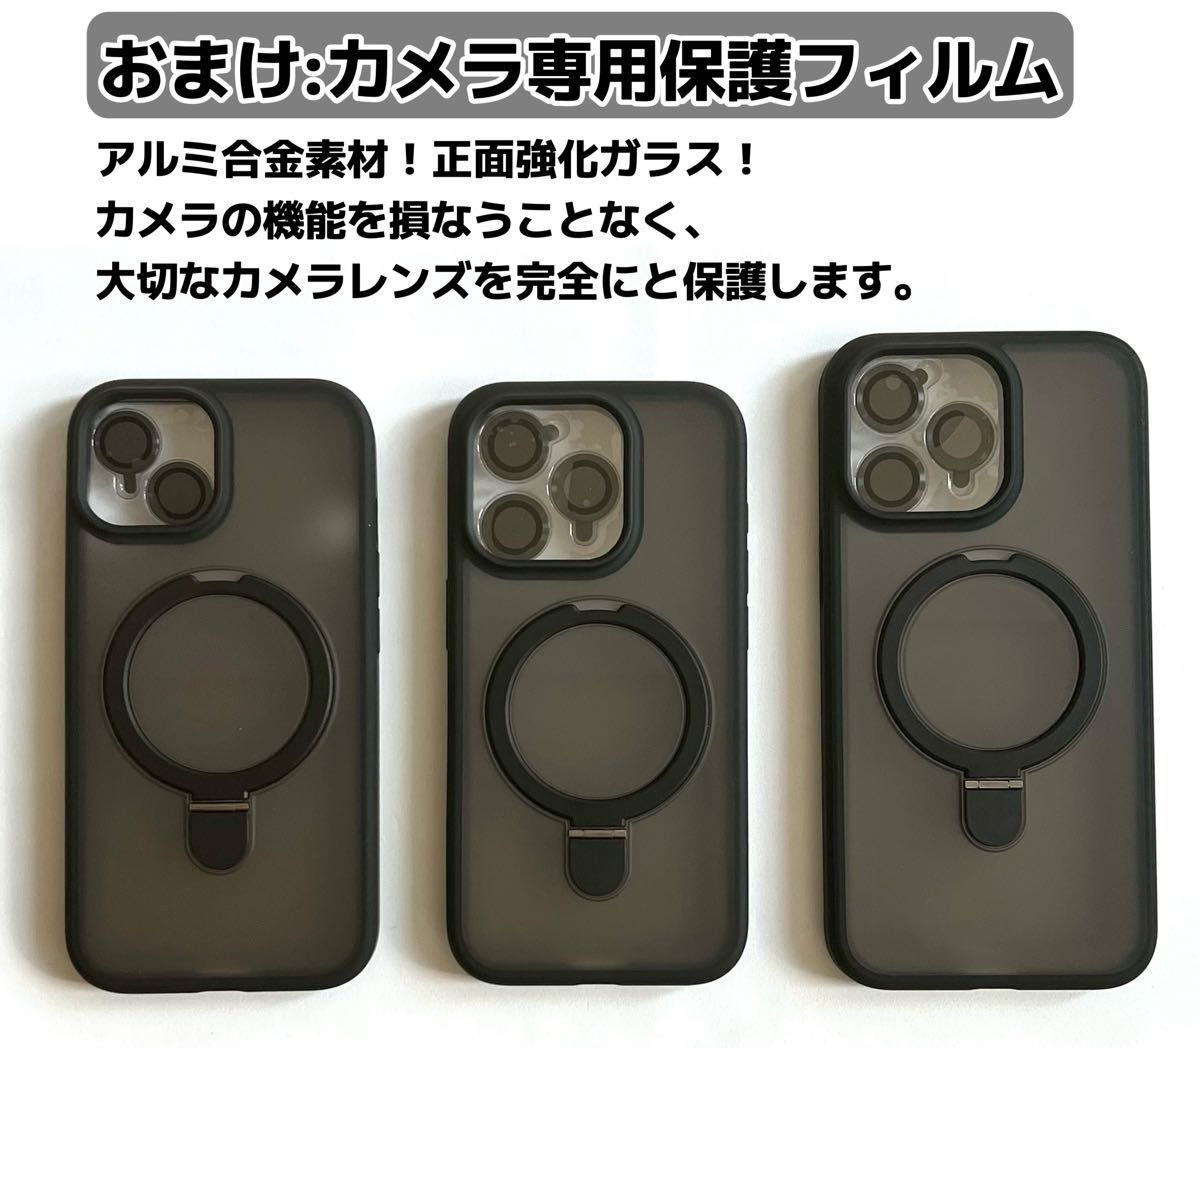 iPhone15 iPhone15pro iPhone15promax ケース MagSafe対応 カメラ保護 スマホリング